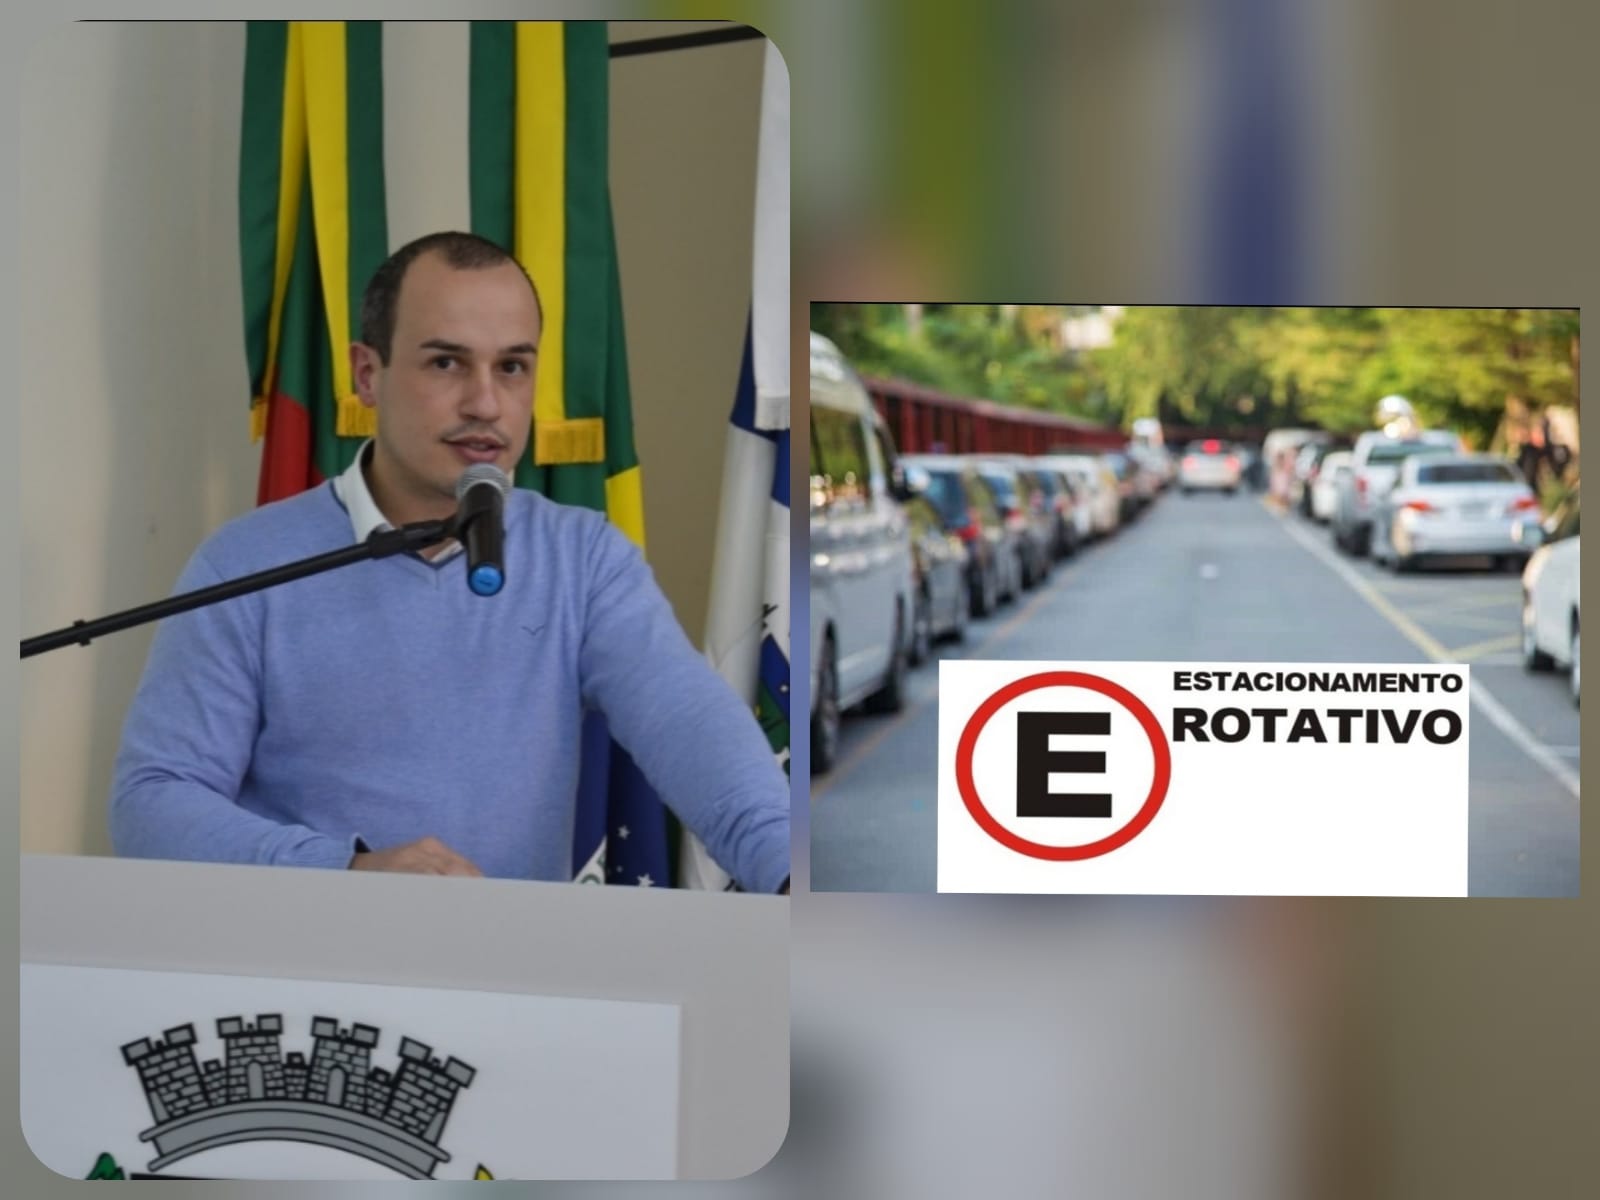 Ezequiel defende implantação de estacionamento rotativo na área central do município